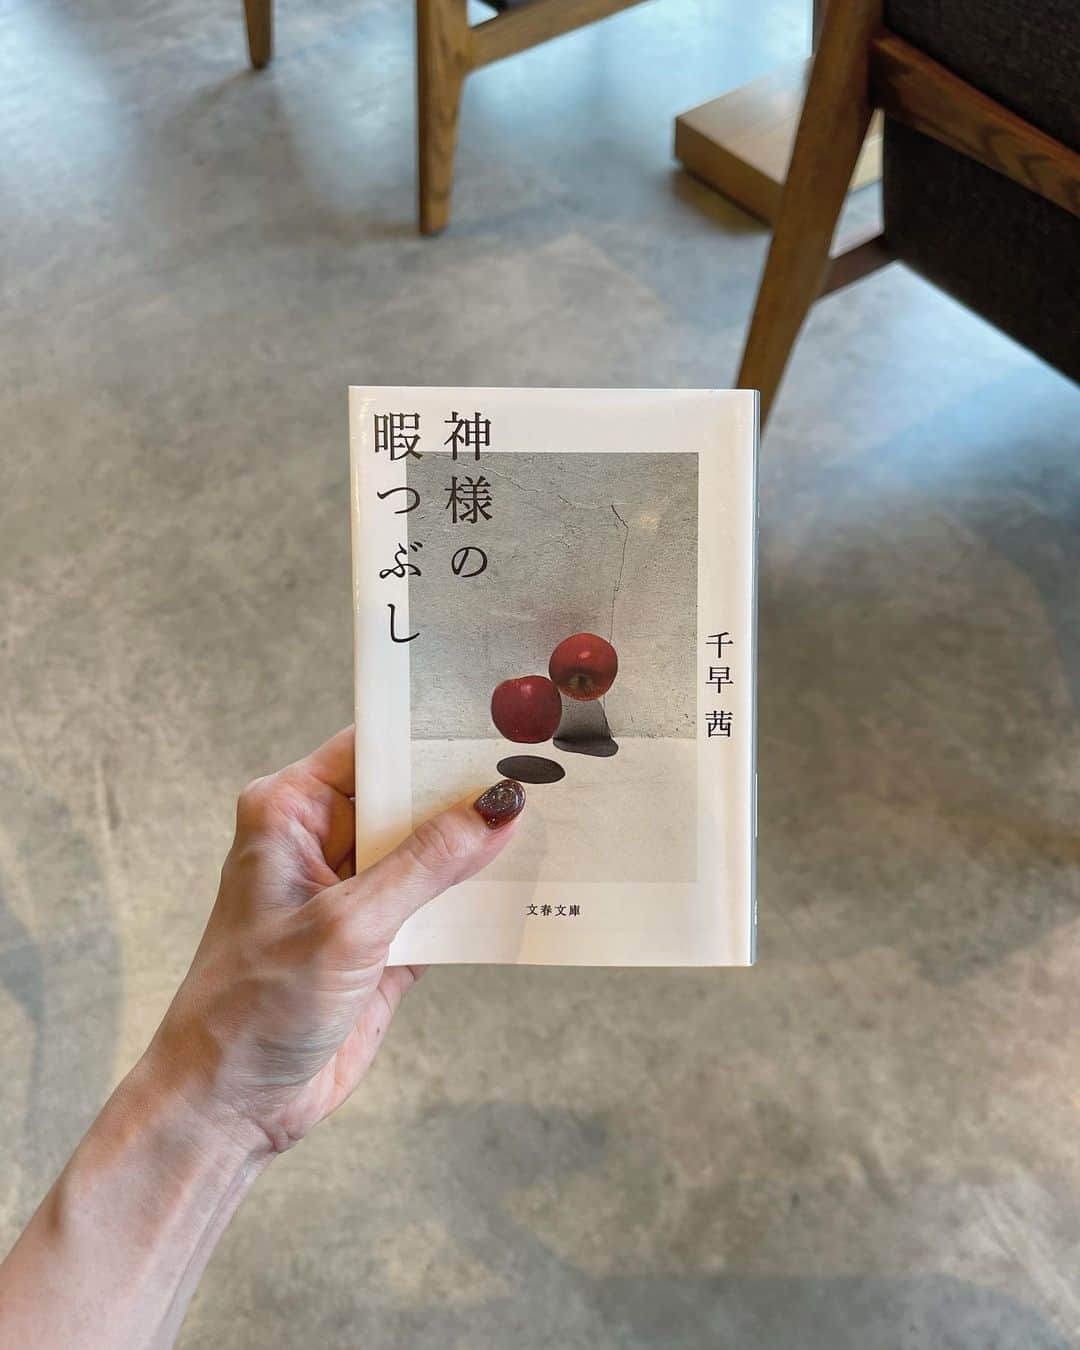 髙林梢絵のインスタグラム：「とても良かった🩵夏にふさわしい一冊！ もうね、最初の数ページ読むだけで うわーーいまこの季節に読めてよかった！と思います。 ⁡ 千早茜さんの言葉は 読み進めるのがもったいない…と思うくらい じっくりゆっくり味わいたくなる美しさがある✨ ⁡ わたしは千早さんの作品は 「透明な夜の香り」につづきまだ2冊目なのだけど ↑これを読んで、わたし、 千早さんが描く男性、ぜっっったい好きだ！！！！！！ と思って今回恋愛小説を読んでみたのだけど！ 案の定！めっっっちゃ！好きでした、、、😫❤️❤️ ⁡ やりとりが全部いいのよ、、、 透明な夜の香りもそうだったけれど 「」のラリーが、最高にリアルでときめき祭り。 ときめく、というより、セクシー？？ 文字から漂う＂色気＂がすごい。 うわぁ、こんなこと言われたい、、が多すぎます🥹 ⁡ 今回のお話は20歳の女子大生が主人公で お相手は、自分のお父さんより年上の男性。 ⁡ 歳の差の恋愛をしたことのない自分としては 読めるかな…？と思う設定だったけれど まんまと、恋に落ちました、、🫠 ⁡ 千早茜さんが描く男女のやり取りが 本当にリアルで読んでてきゅんとするのも楽しいし、 言葉が良さも推しどころだけど ⁡ さらには！食べ物の描写が多くて どれもが全部美味しそうですごすぎる！！ グルメ満載でよだれが出ます🍑  ちなみに、カレーを食べるところから物語は始まって、 山登りで頂上に辿り着いて手をビシャビシャにしながら 食べる桃とか、デートで行く様々な居酒屋さんとか🍶 ⁡ 千早茜さんの他の作品も もっと読んでみよう〜！と、 これを読んでますます思いました🫶🏻 次は「さんかく」を読みたいな💕🔺 ⁡ ⁡ 🌜心に響いた言葉🌜 ⁡ ❶「時間は記憶を濾過していく。 思い出とは薄れるものではなく、濾されてしまうもの。 細い金属の糸でみっちりと編まれた網に通され、 濁りが抜けおちていく。  時間はそれを何度も何度もくり返し、 日々の些事(さじ)はぽたりぽたりと滴り(したたり)、 どこかへ流れ去ってしまう。  やがて、純度の高い記憶だけが 網の上できらきらとした結晶となって残る。 洗いぬかれたそれは日を追うごとに輝きを増し、 尖った欠片(かけら)は胸に突き刺さる」 ⁡ →冒頭がこれなんですが、最高すぎてため息出た… 共感しすぎて頭から湯気♨️ ⁡ ⁡ ❷「夏は空気の重みを感じる。 まとわりつき、のしかかってくるそれは息苦しい。 汗まみれで時間と取っ組み合う熱帯夜も、 むっと匂いたつ夕立も、騒がしい蝉の声も、 目の裏を真っ白にする激しい太陽も、 夏の大気は生々しく、 感覚のすべてを否応なく支配していく」 ⁡ →好きーーーー、、ここ声に出して読みたい😭❤️ ⁡ ⁡ ❸「太陽は傍若無人で過剰で鮮烈。 この季節は疎ましい。なのに、嫌いになれない」 ⁡ →この夏の暑さの表現が 好きだった人と重ねてるような気がして、 再読すると泣ける🥲 ⁡ ⁡ ❹「『おい、馬鹿、飲むなよ。 まず口ゆすげ、ゲロ子。』と頭をはたかれる。 『ゲロ子』に小さく傷ついたが、軽口にほっとした」 ⁡ →やりとりの中で最も好きだったシーン。笑 ⁡ ⁡ ❺「事実を言葉にするのはしんどい。 言葉にしてしまったら、それを受け入れないと いけなくなるんだから。早いも遅いもない。 柏木が口にしたいタイミングでいいんだよ」 ⁡ →良い言葉🫶🏻 言葉にすると受け入れなきゃいけなくなる。なるほど ⁡ ⁡ ❻「夕陽がさっきよりにじんでいた。 あの溶けそうなオレンジ色は人の心を 丸くするのかもしれないと思いながら、 全さんのベルトを握り直した」 ⁡ →恋してるなぁ、な一文にきゅん🧡🌇 ＂溶けそうなオレンジ色は人の心を丸くする＂ ⁡ ⁡ ❼「小さなガラスの杯に全さんが冷酒を注いでくれる。 ふくよかな甘さが喉を潤し、胃の底をほんのり熱くした。 水のようにするすると飲めた」 ⁡ →これ読んで日本酒が飲みたくなりました😂 好きな人と飲むお酒の描写、、すてき、、 ⁡ ⁡ ❽「それは里見が自分の口で伝えるべきことだよ。 菜月が勝手に言っていいことじゃない。 たとえ、友達でも、恋人でも、家族でも」 ⁡ →この文章を読んでわたしは深く反省しました… 自分から言っちゃいけないことは、あるよなぁと… 本人から言うべきことで、 わたしが言っちゃいけないこと。気をつけよう🥲 ⁡ ⁡ ❾「深く小さな闇をつかまえて、 あの濡れた晩へと戻っていく」 ⁡ →最後のこの一文がおしゃれすぎて この言葉をうっとり読みなが しばらく呆然としちゃいました。  神様の暇つぶし、の意味もじーーーんときます😿 恋愛のあれこれだけでなく、生と死、とかね。 ⁡ ・・・  📸  ③今週の石本商店スナップ  ④たなか農園さんのトウモロコシキーマ ＆夏野菜とホタテのカレー。今週もやばい❤️‍🔥😭  ⑤派手派手なジニアかわいい  ⑥明日も元気にお待ちしてます🫶🏻  ⑦ブックオープナーをようやく買いました！ ⁡ ⁡ #神様の暇つぶし #千早茜 #毎日読書チャレンジ #152冊目 ⁡ 📚 @kozue__oshima」